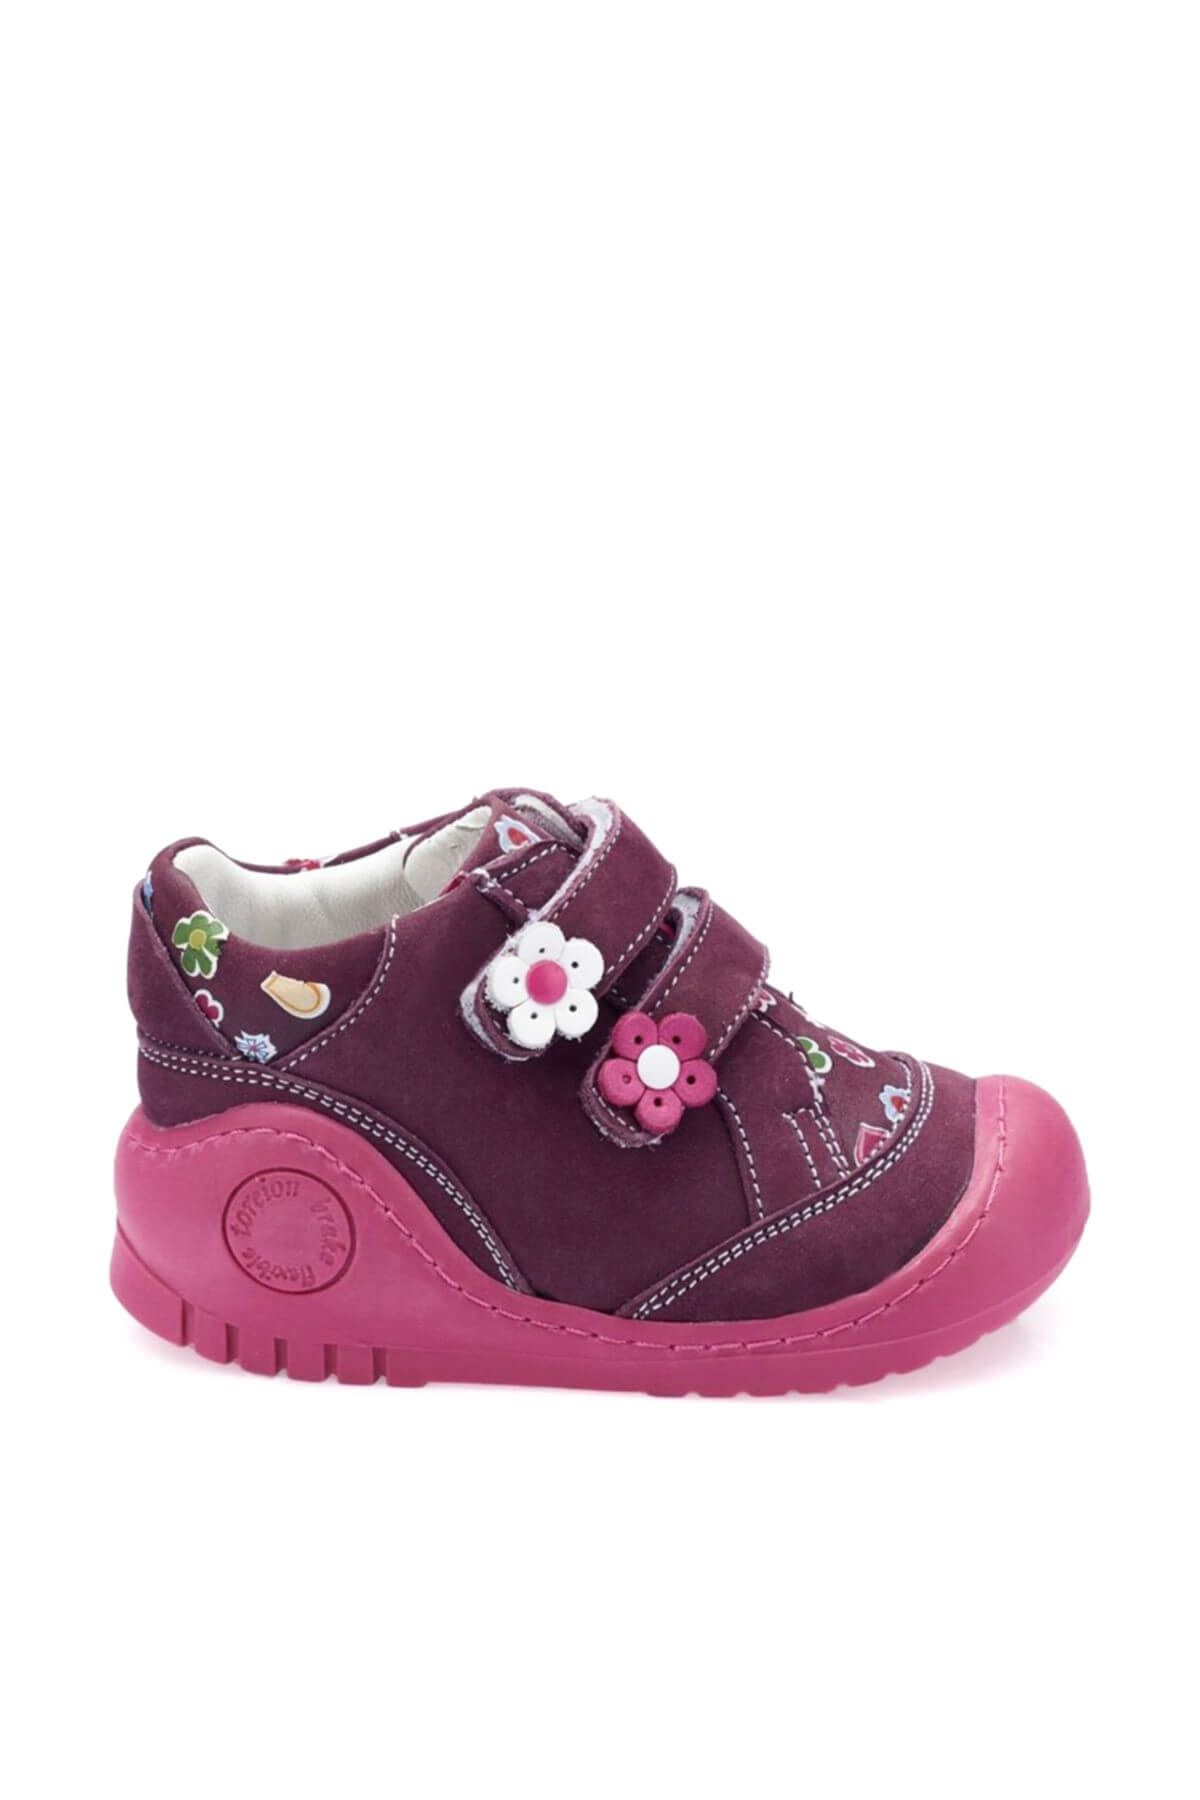 Polaris 82.510505.i Mor Kız Çocuk Deri Sneaker Ayakkabı 100331915